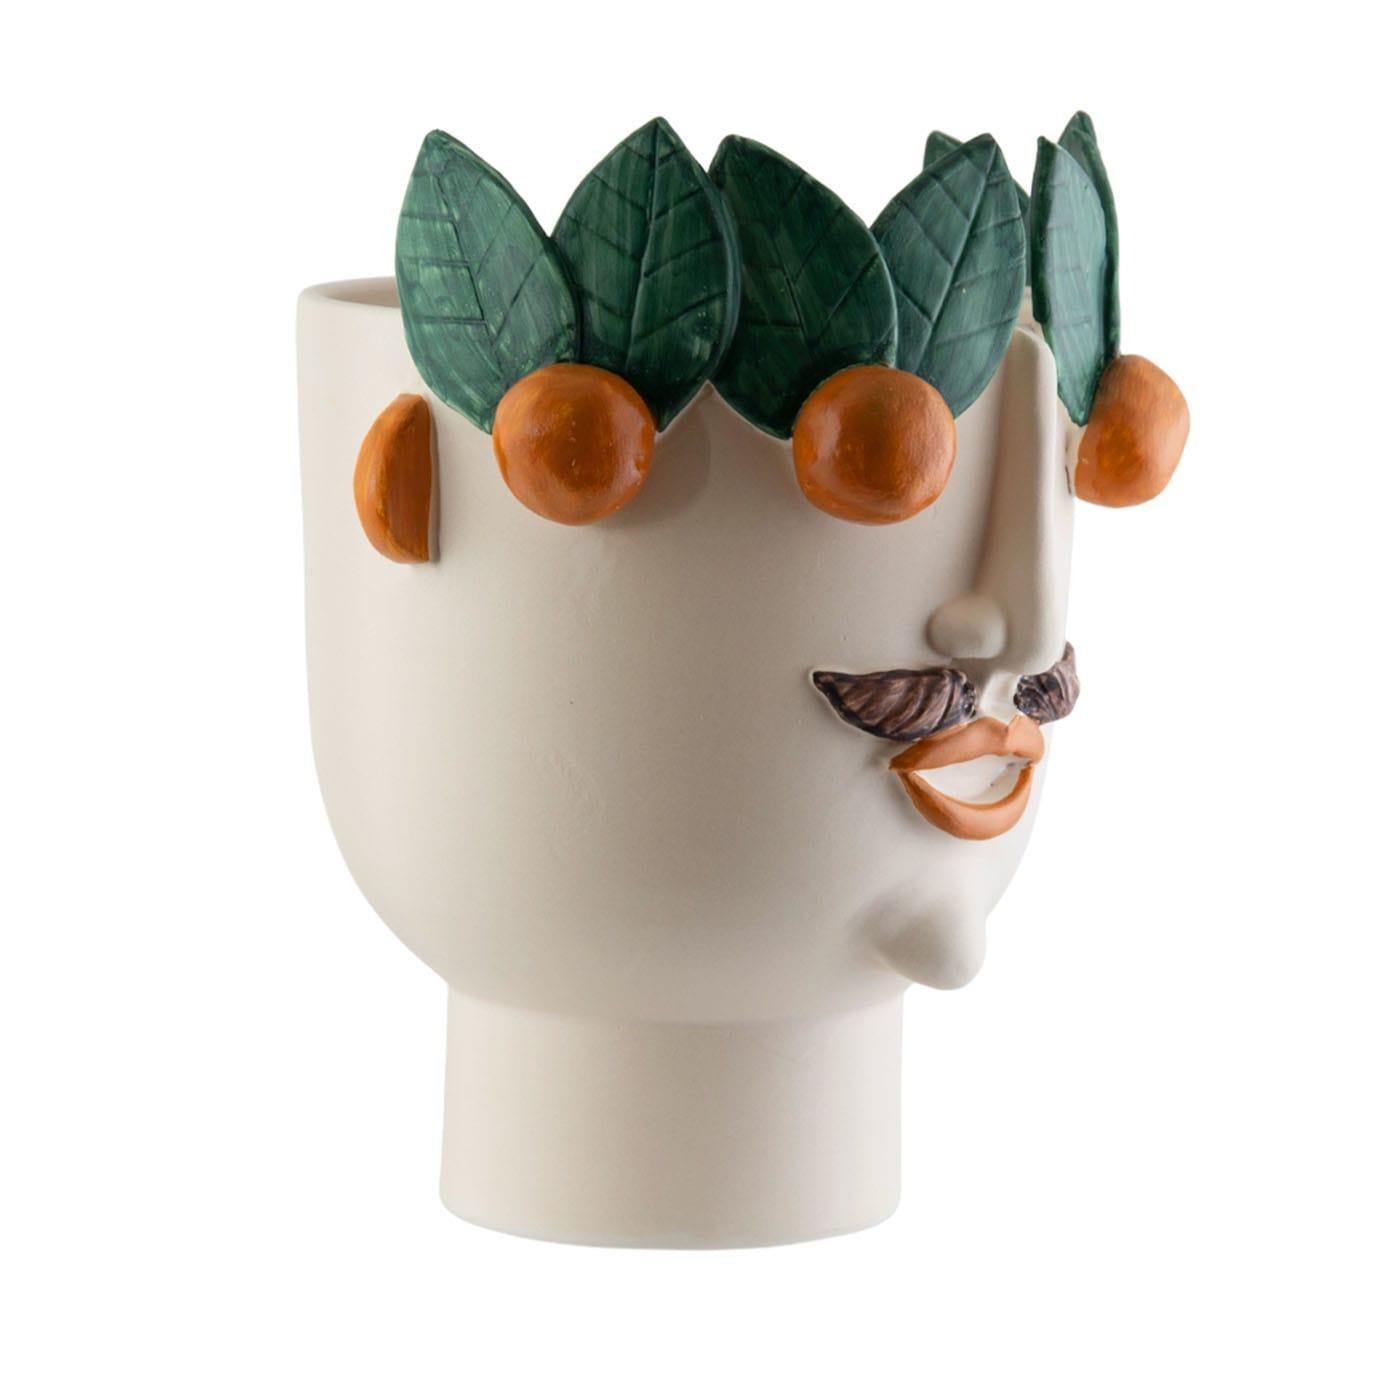 La seconde tête en céramique cuite au feu, fabriquée à la main avec des reliefs de visages et de mandarines, peut être utilisée pour tenir des plantes, des fleurs et parfois même des bouteilles avec de la glace. Calogero vend des mandarines au